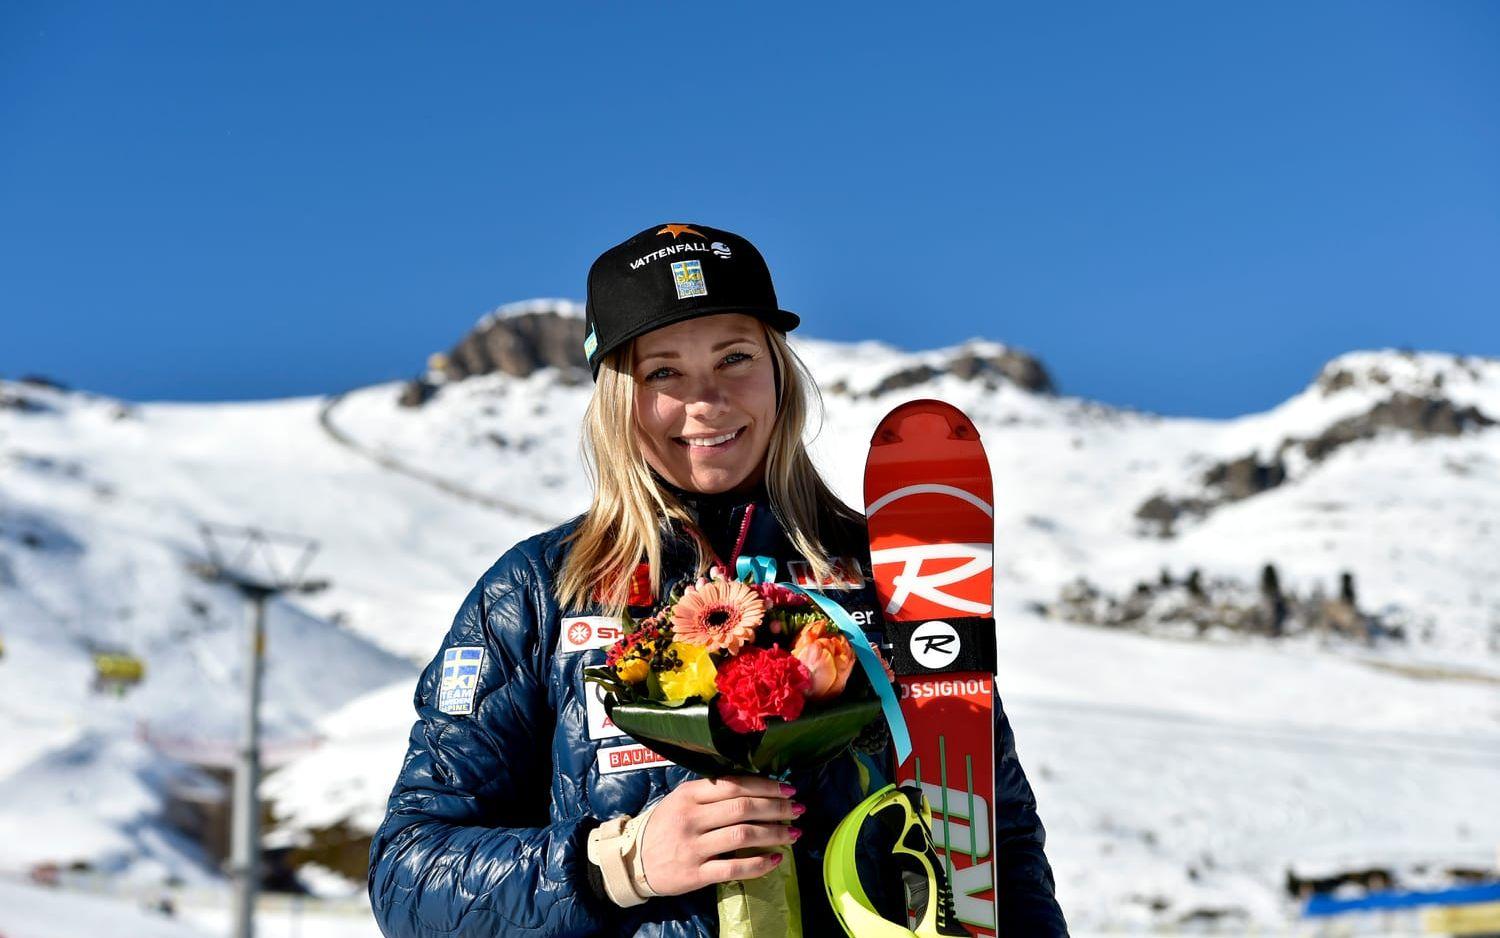 Och så 2017 där Hansdotter tog hem tredje raka medaljen i slalom på VM i och med sitt brons. Foto: Bildbyrån